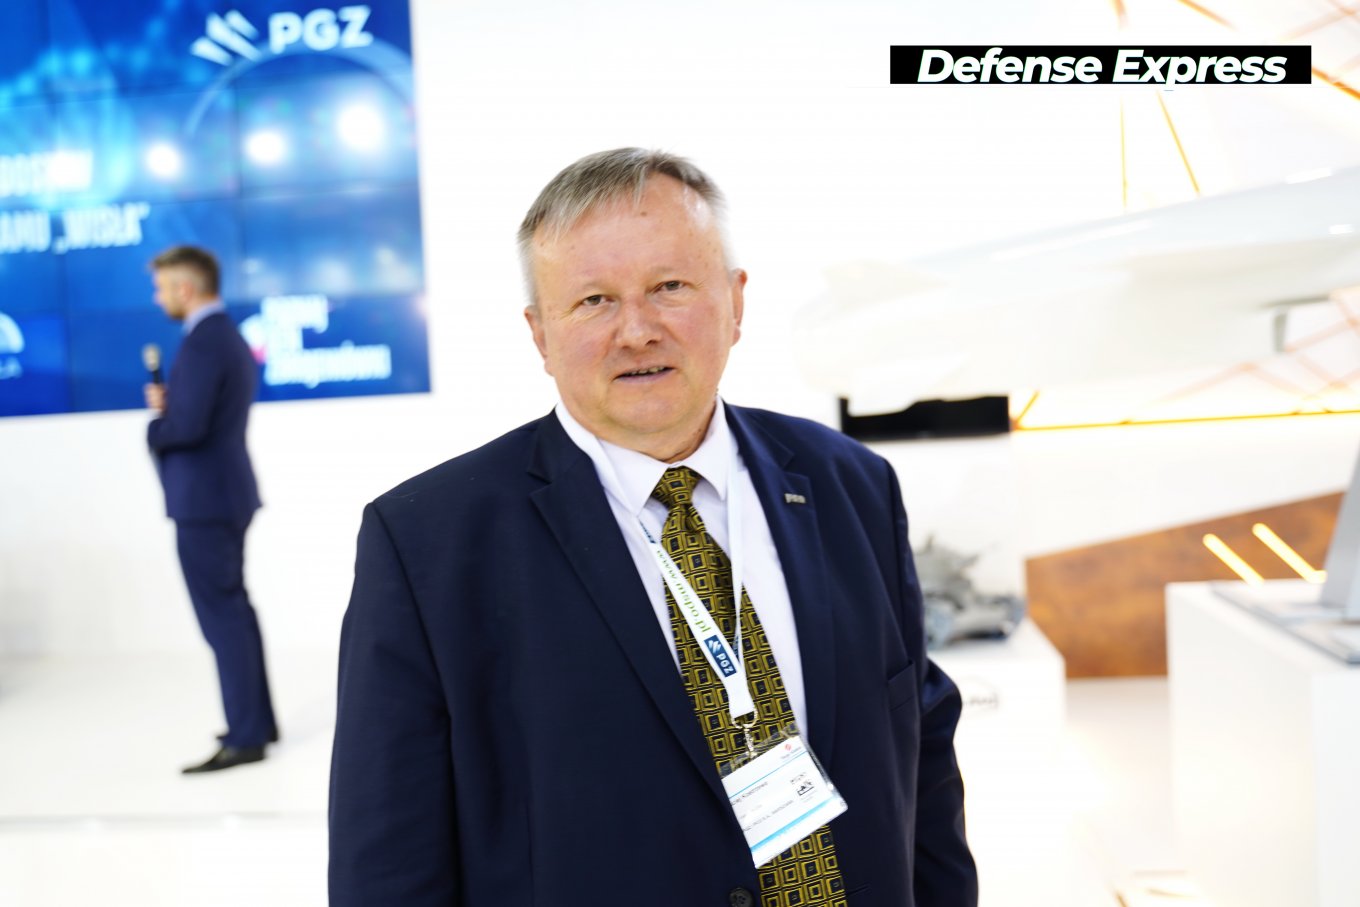 MSPO-2021, Українські вертольоти та польска PCO S.A. підписали угоду про співробітництво,  Defense Express